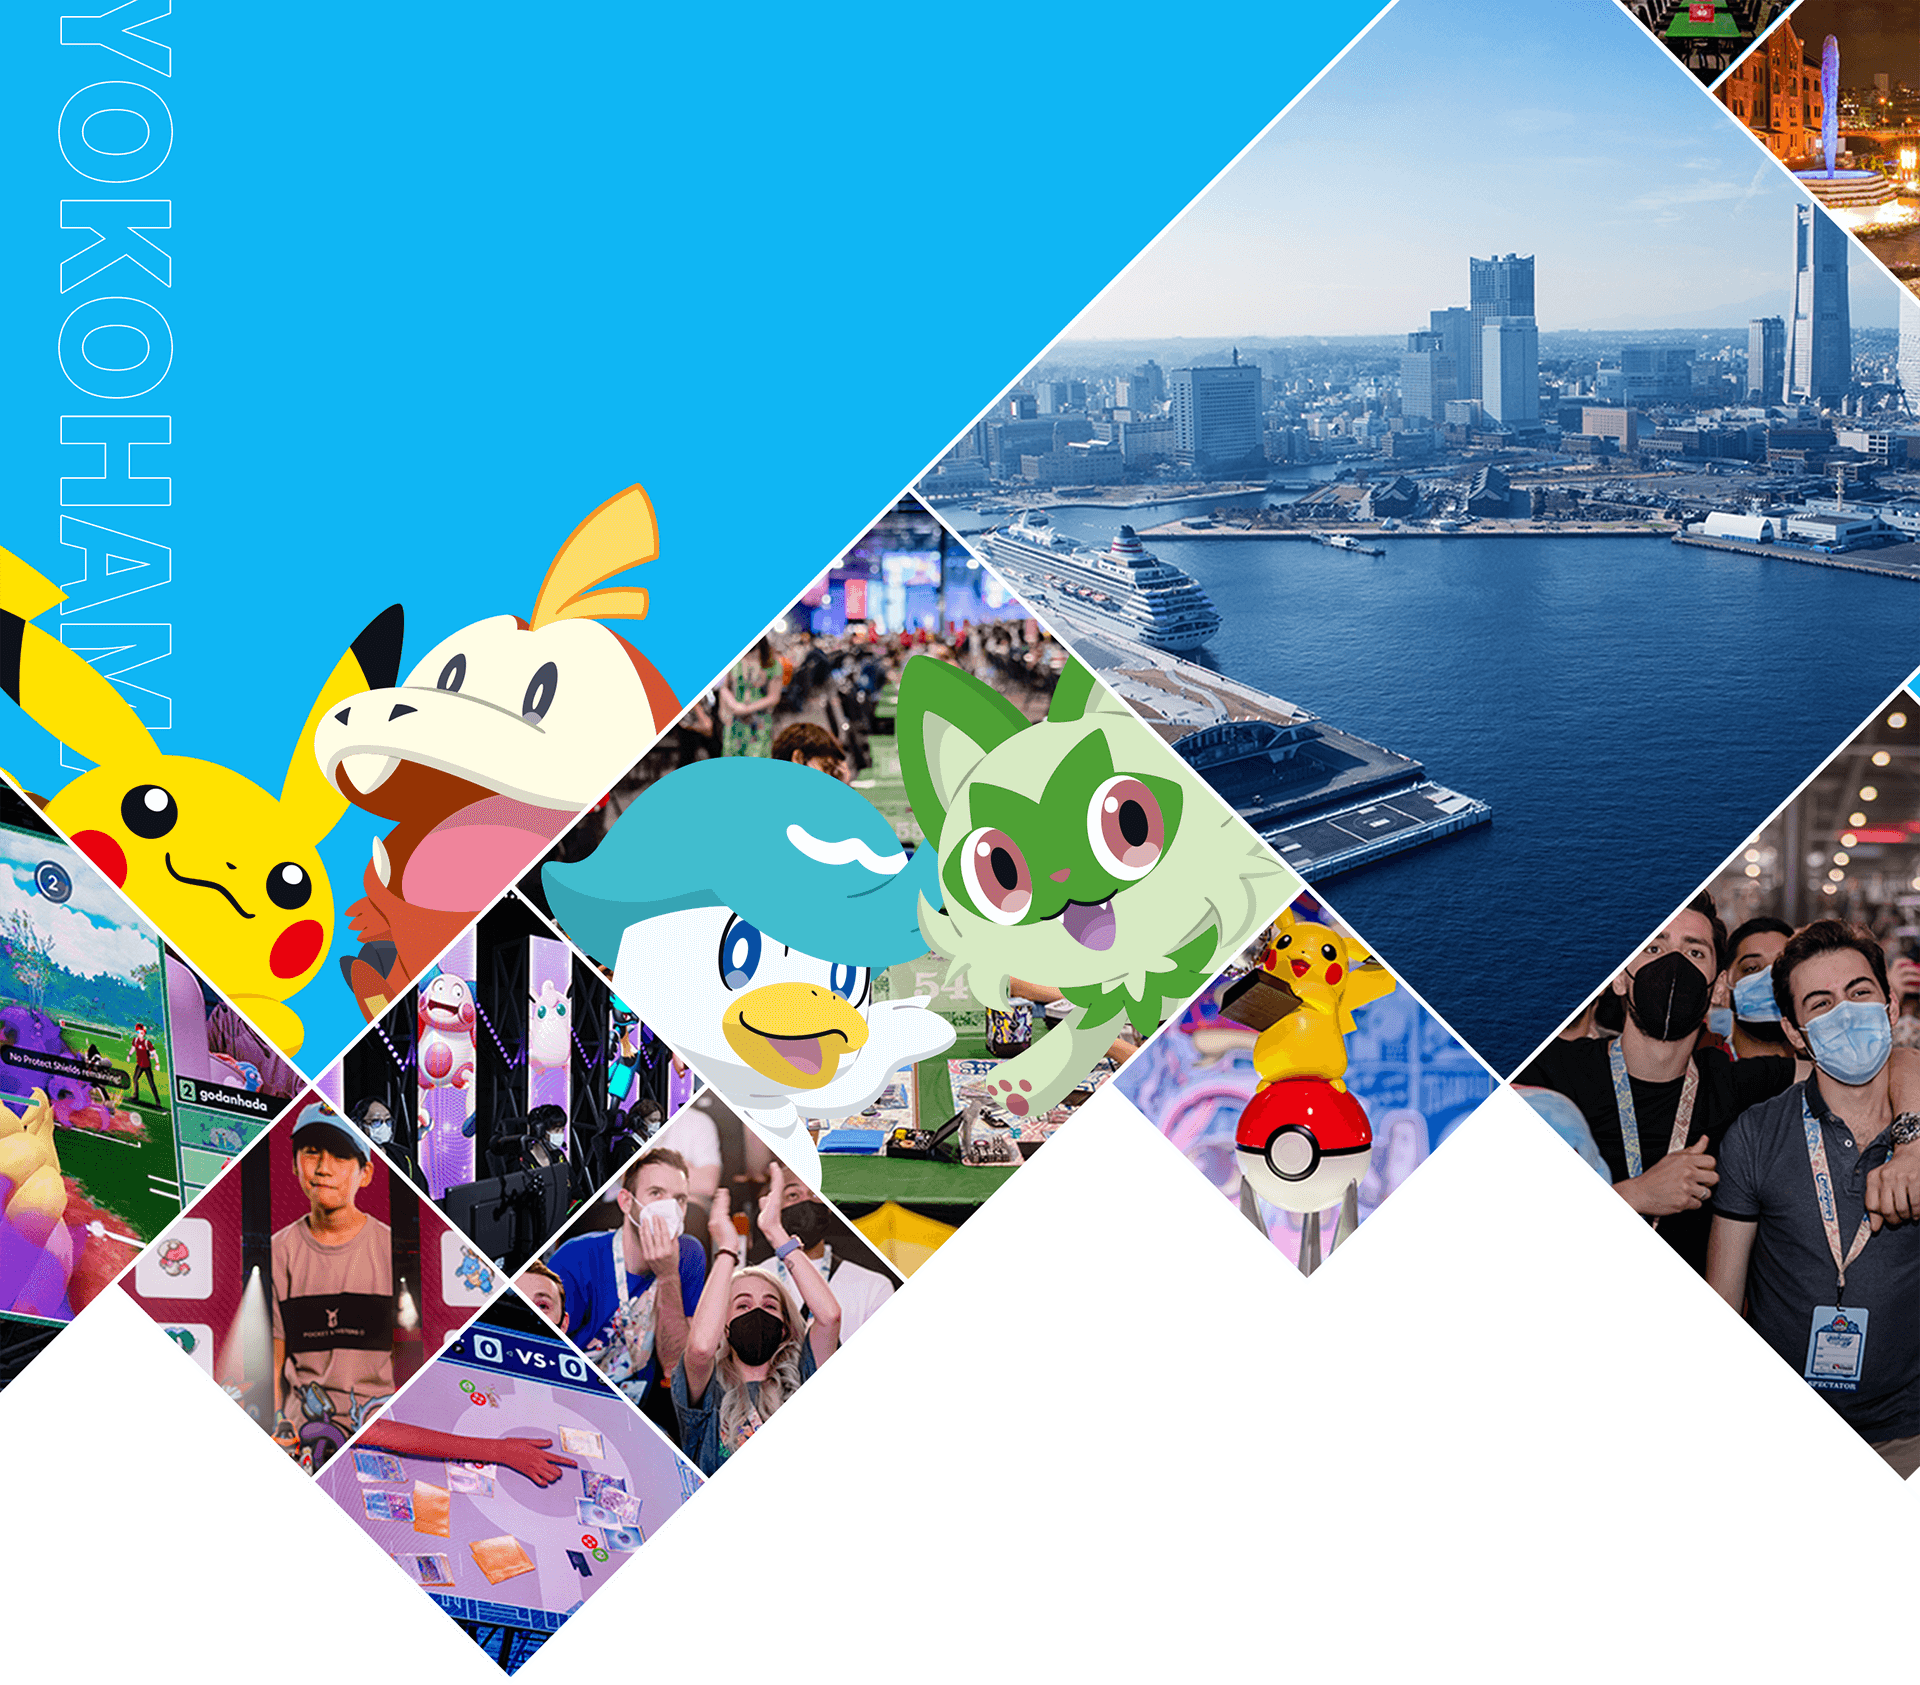 Pokemon World Championships 2023 Schedule, Channels, Details